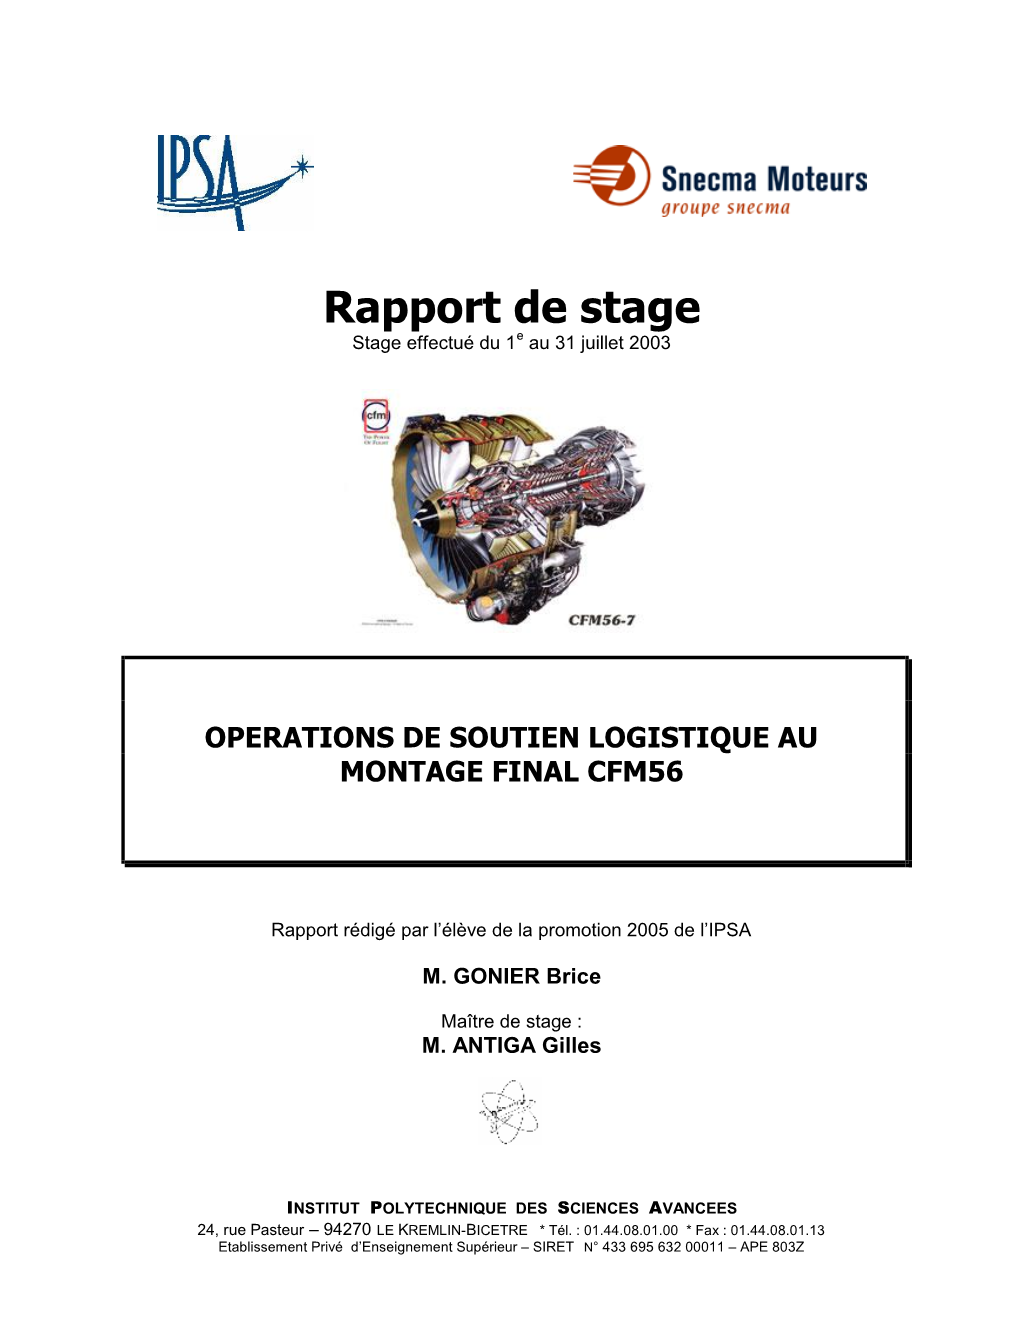 Brice Gonier-Rapport De Stage Ouvrier Snecma Moteurs 2003.–